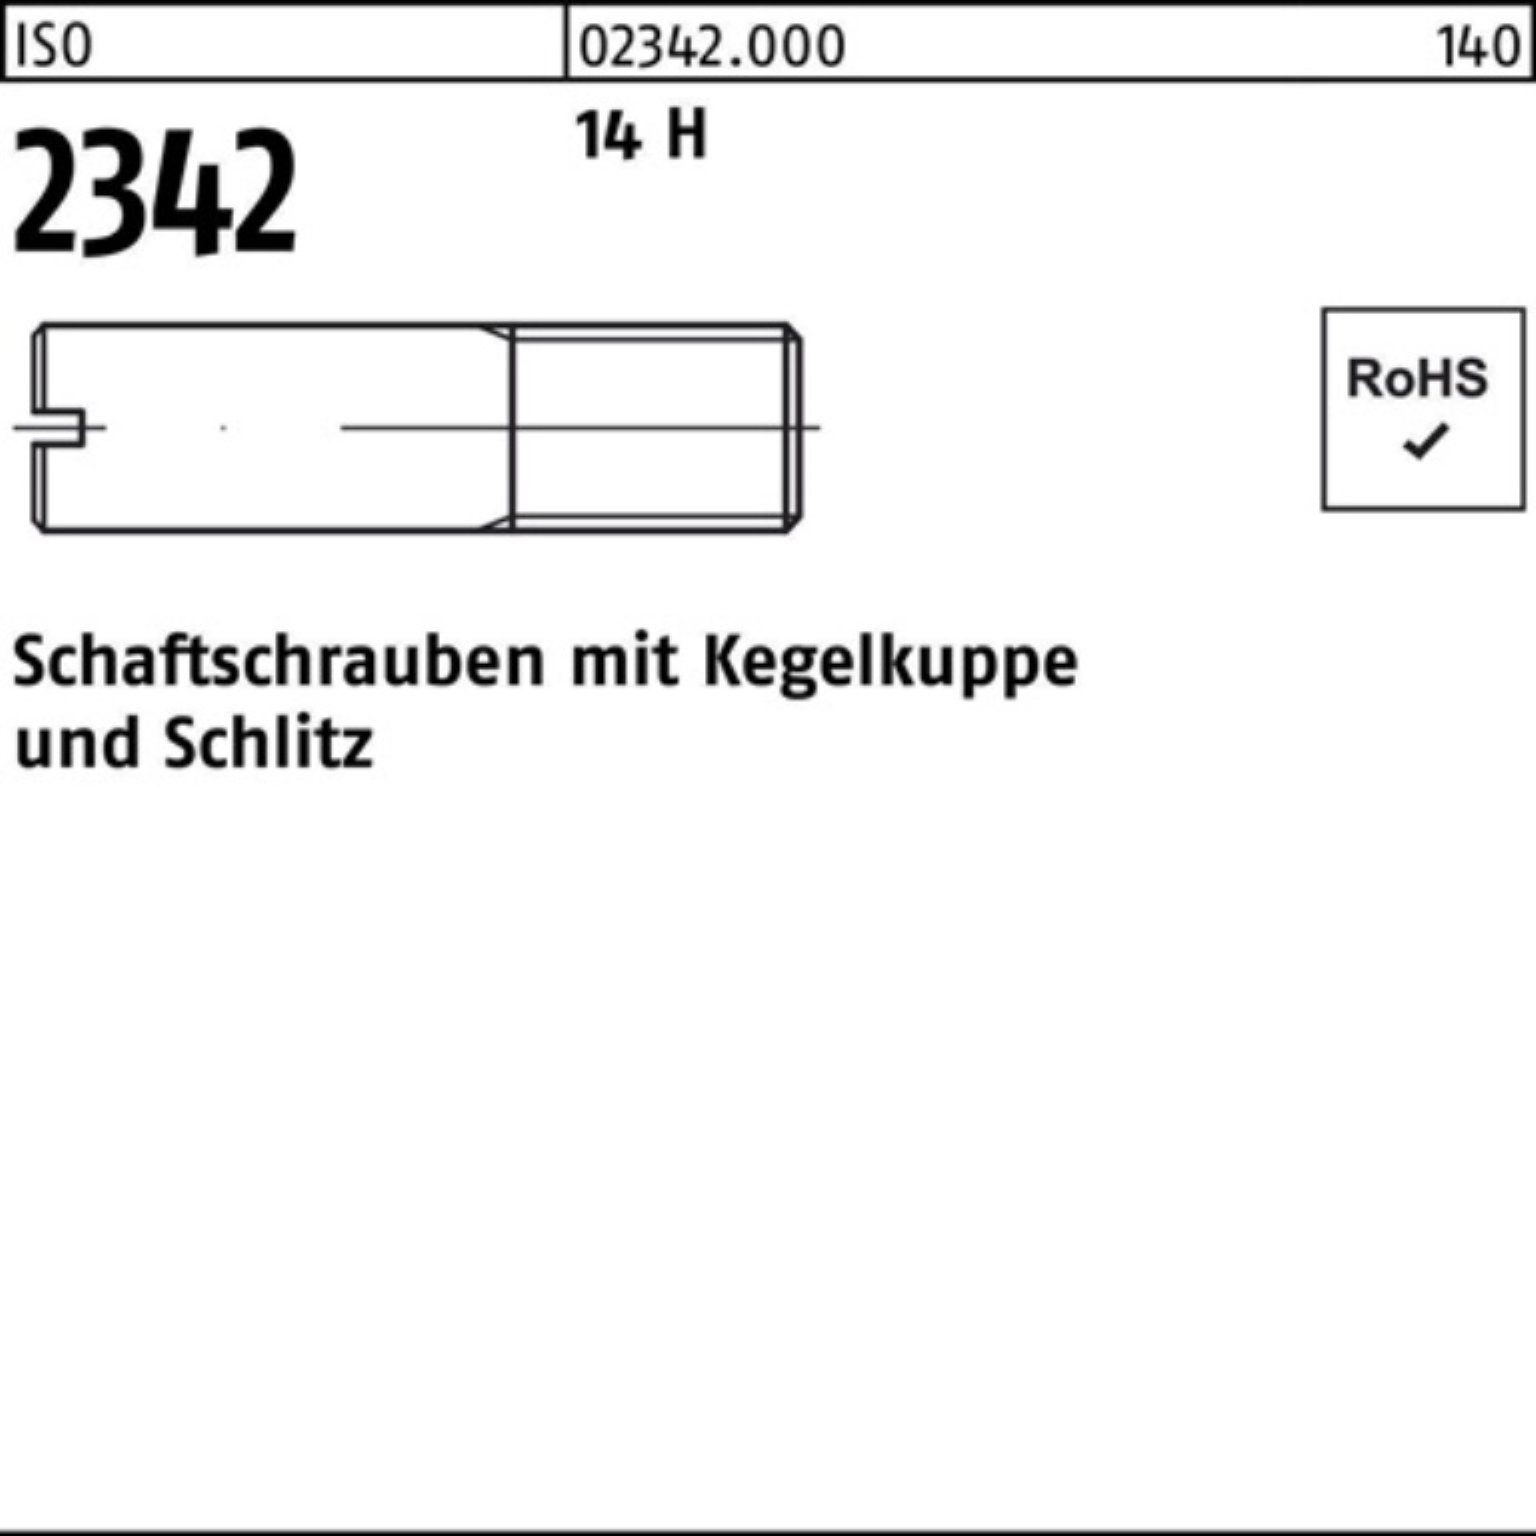 Reyher Schraube 100er Pack Schaftschraube ISO 2342 Kegelkuppe/Schlitz M6x 25 14 H 100